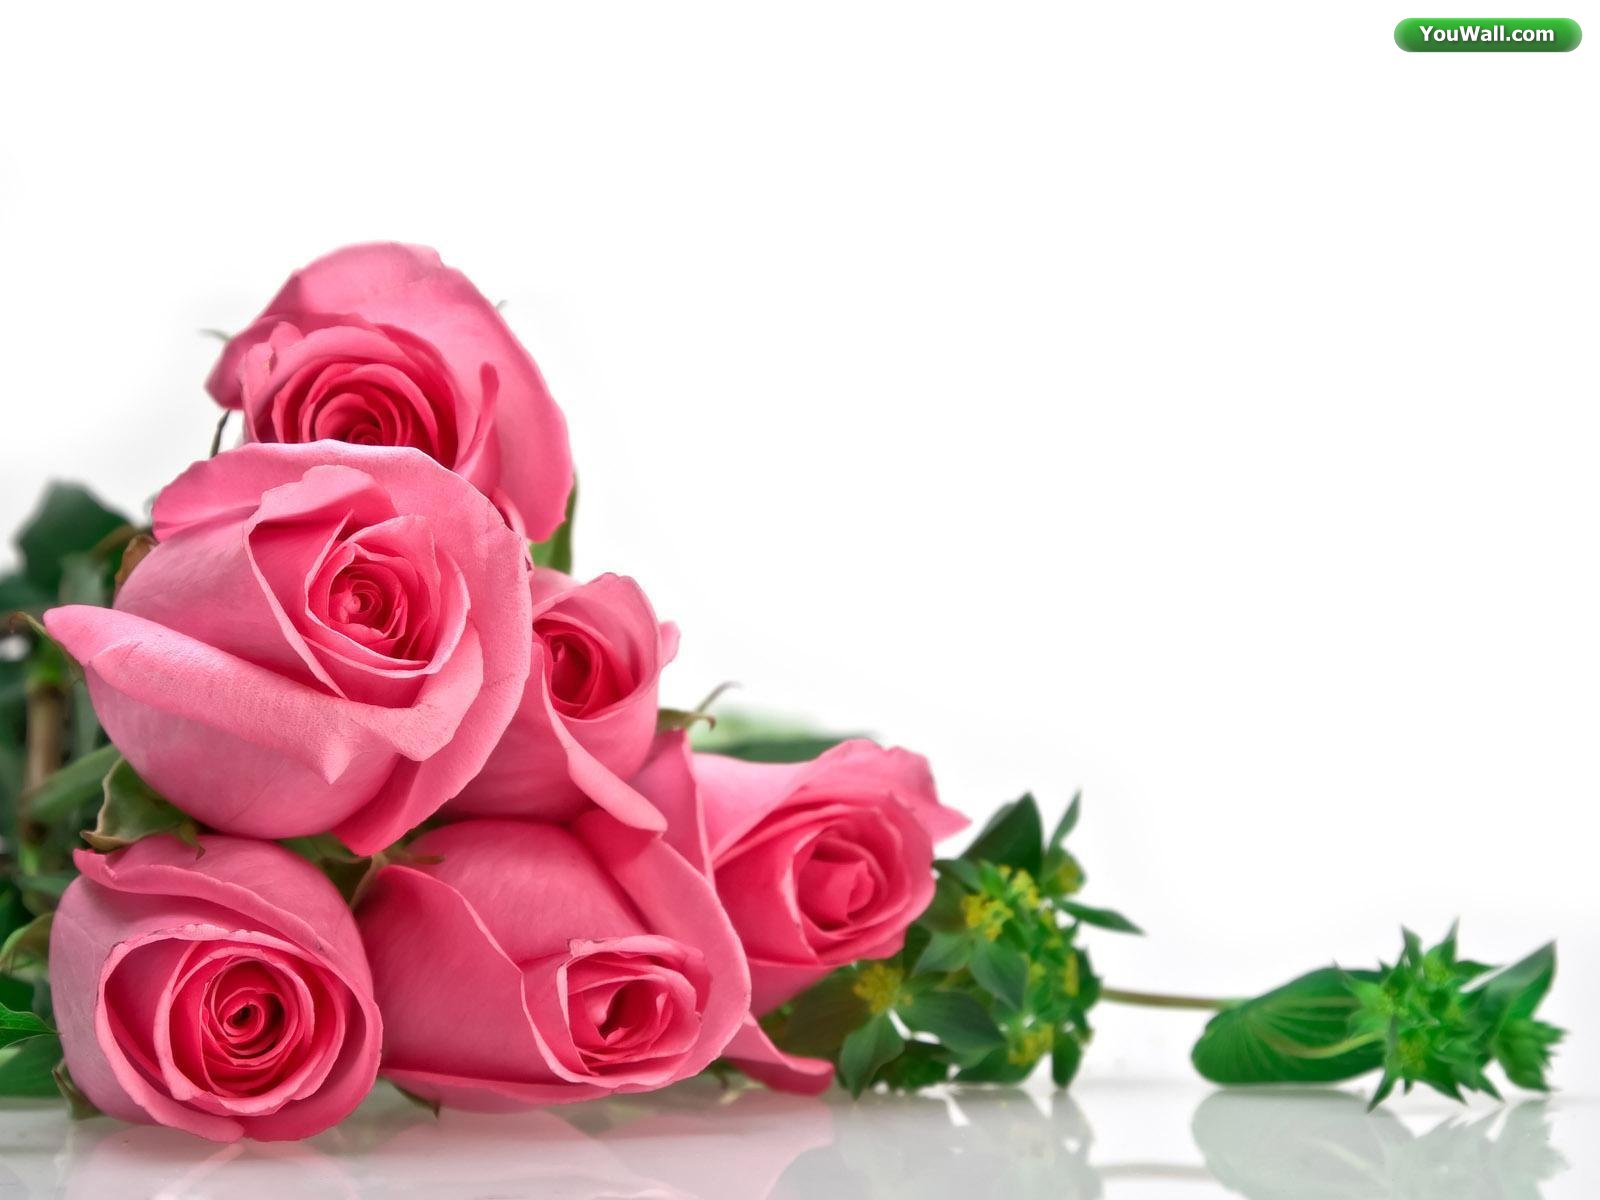 Roses Wallpaper For Desktop Rose